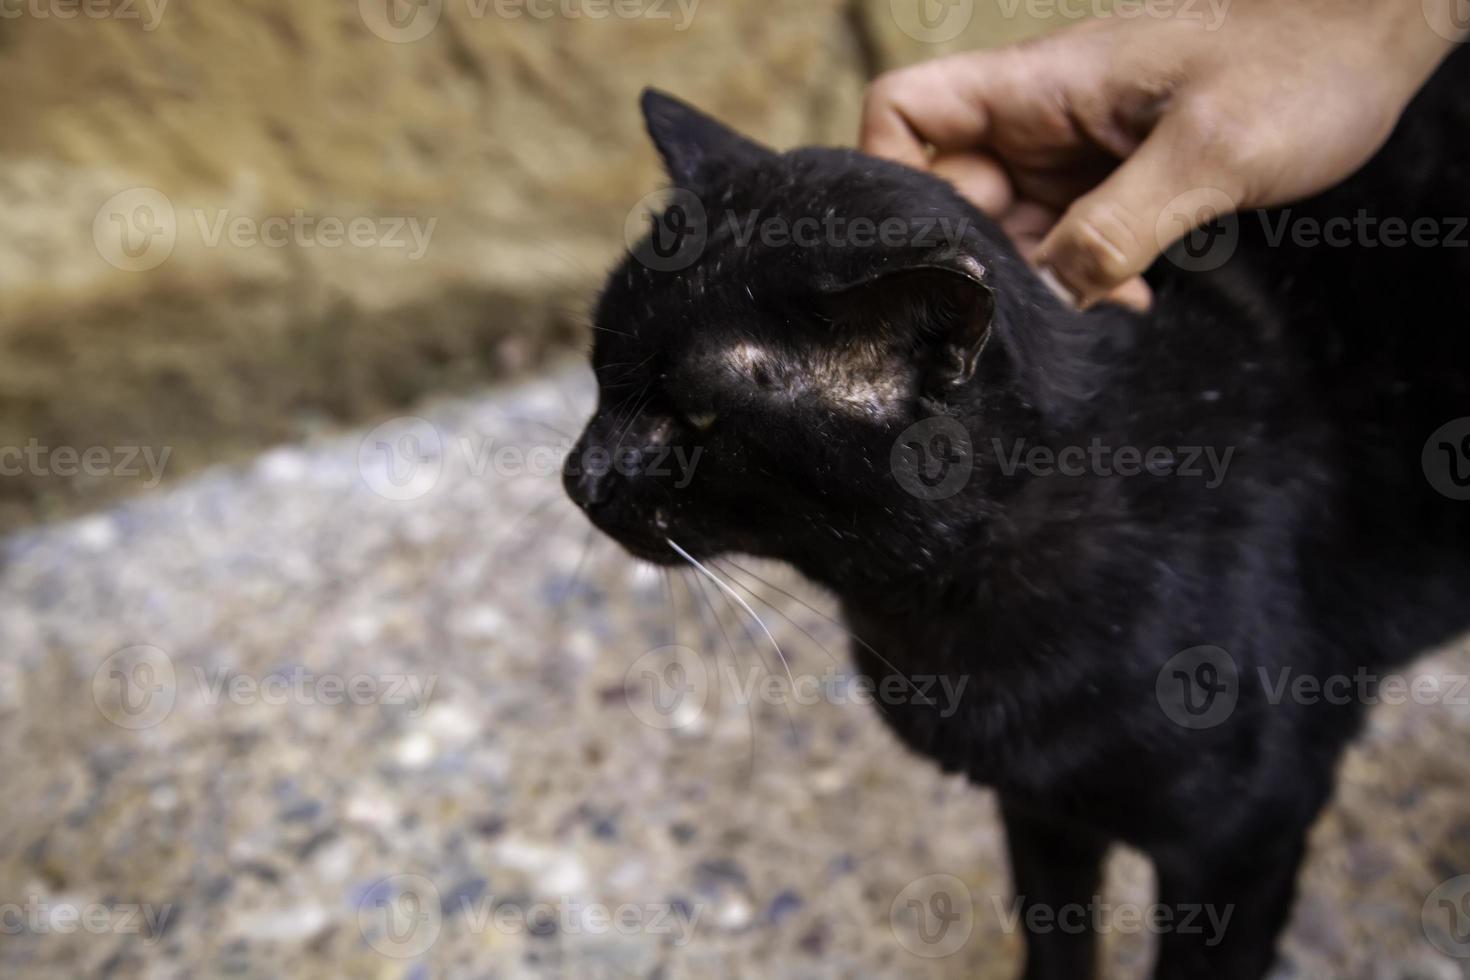 schwarze Katze auf der Straße foto